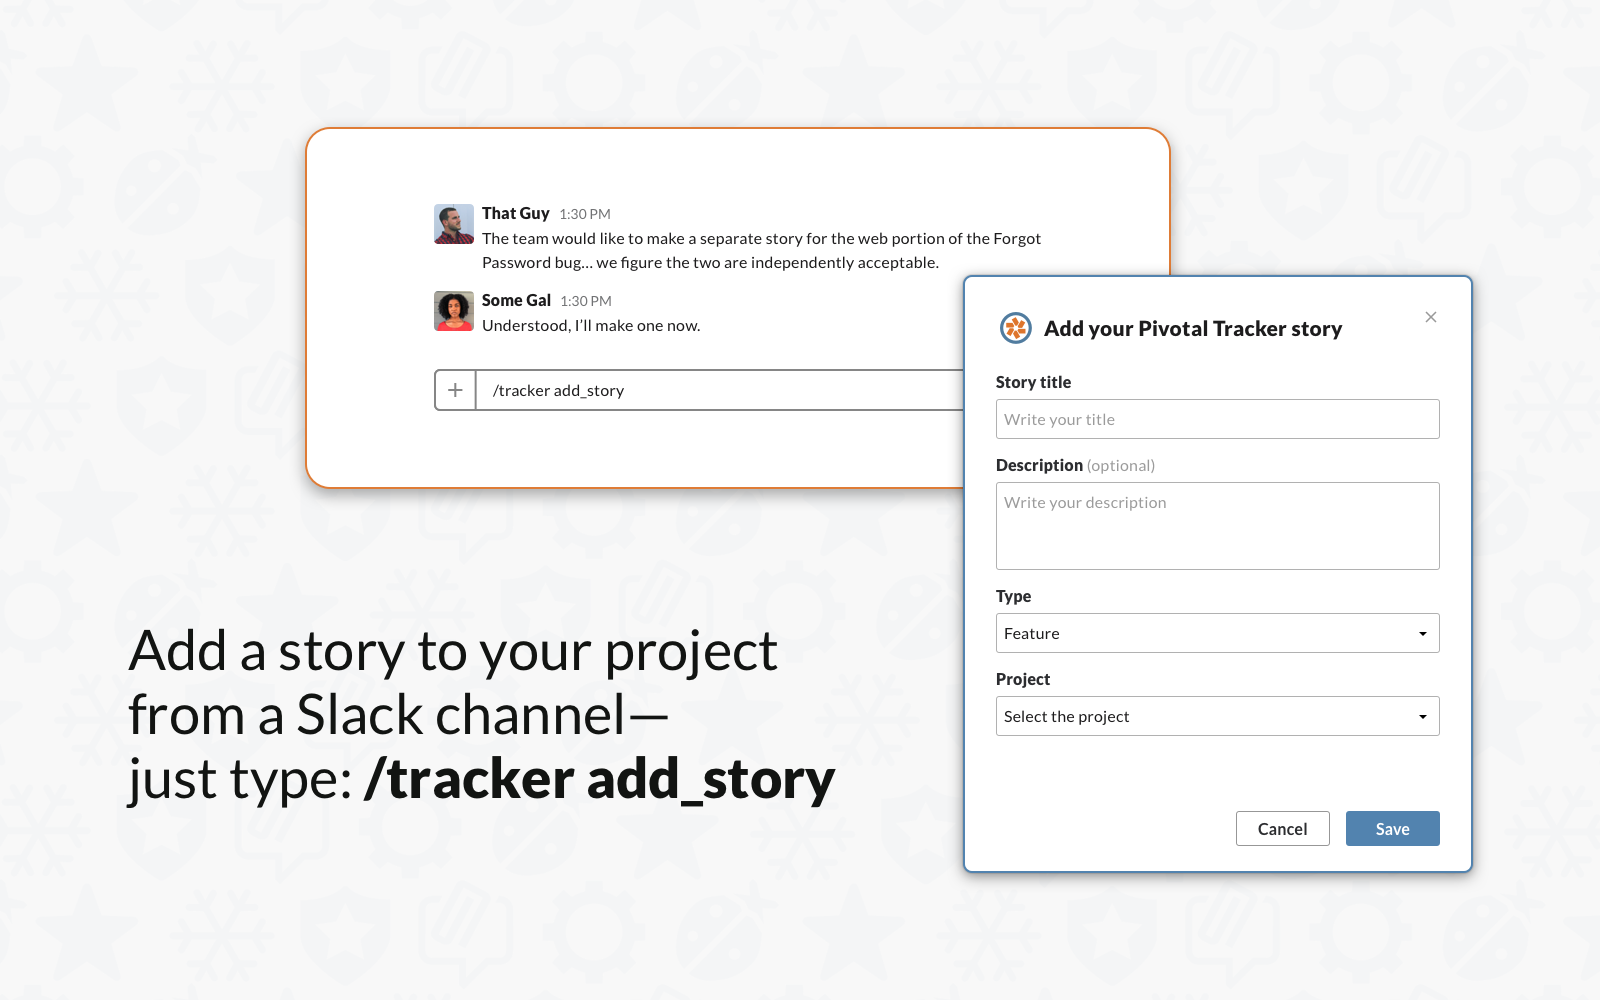 Add a story via Slack